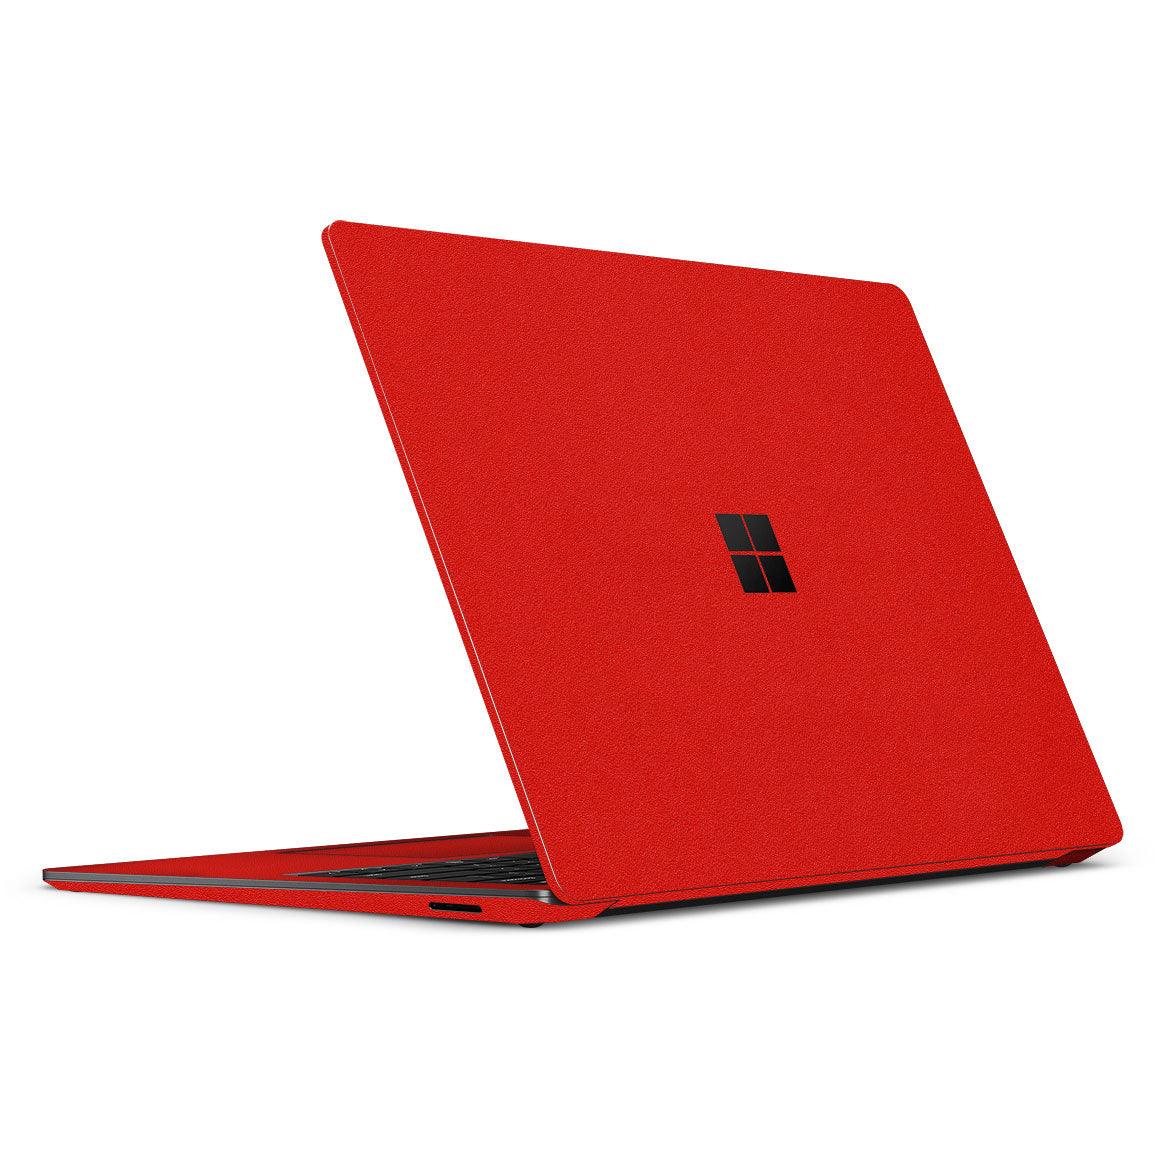 Microsoft Surface Laptop Skin - Blue Water Turtle